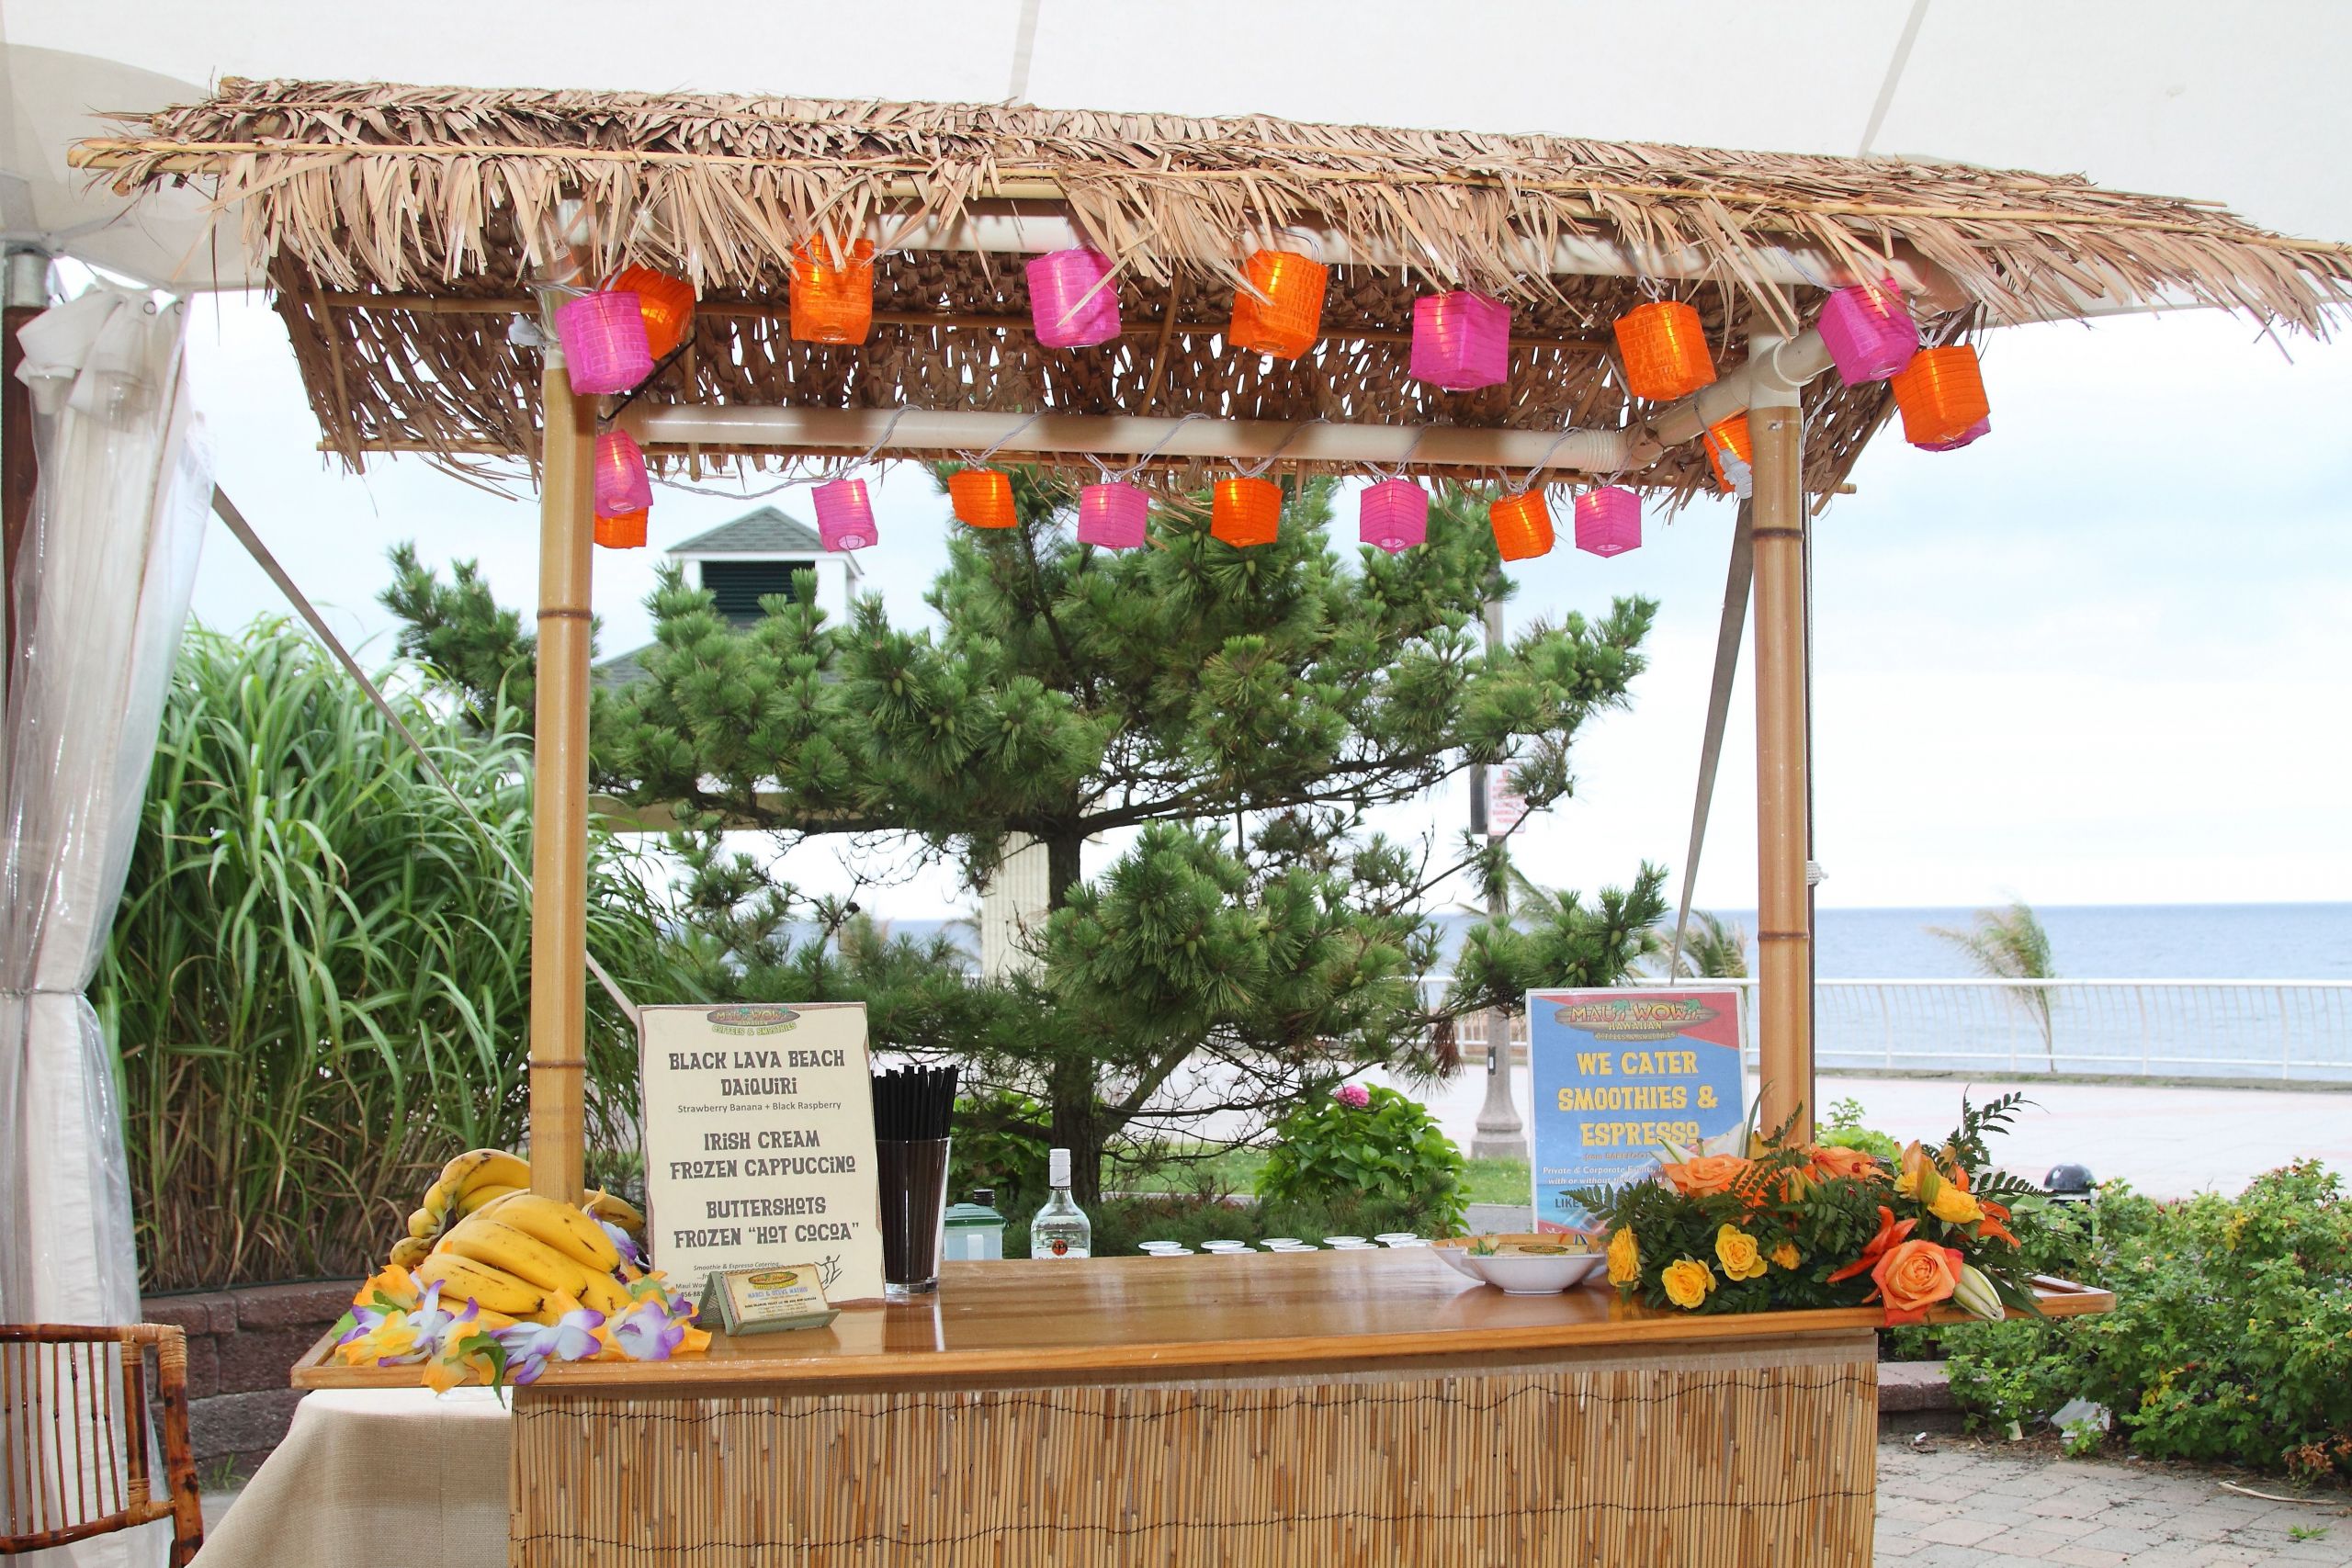 Beach Bar Party Ideas
 special daiquiri bar for a havana nights or beach theme